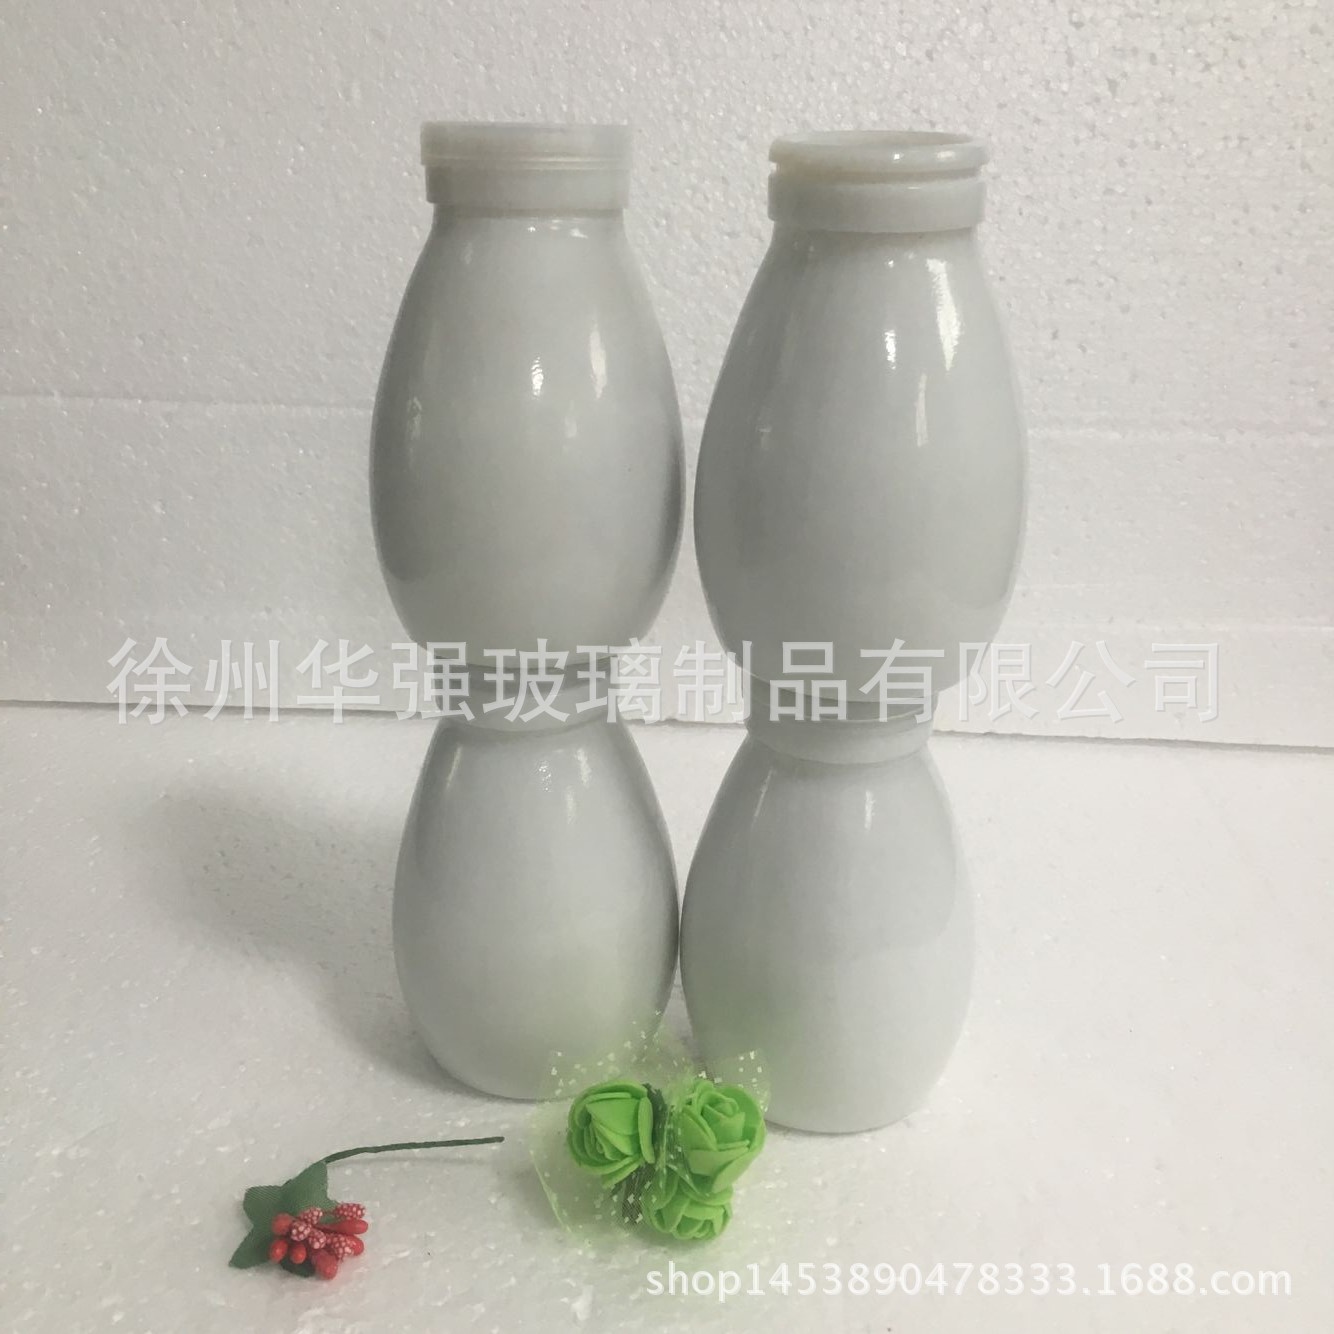 新款240ml酸奶瓶布丁瓶白瓷瓶陶瓷青花牛奶瓶酸奶罐带盖